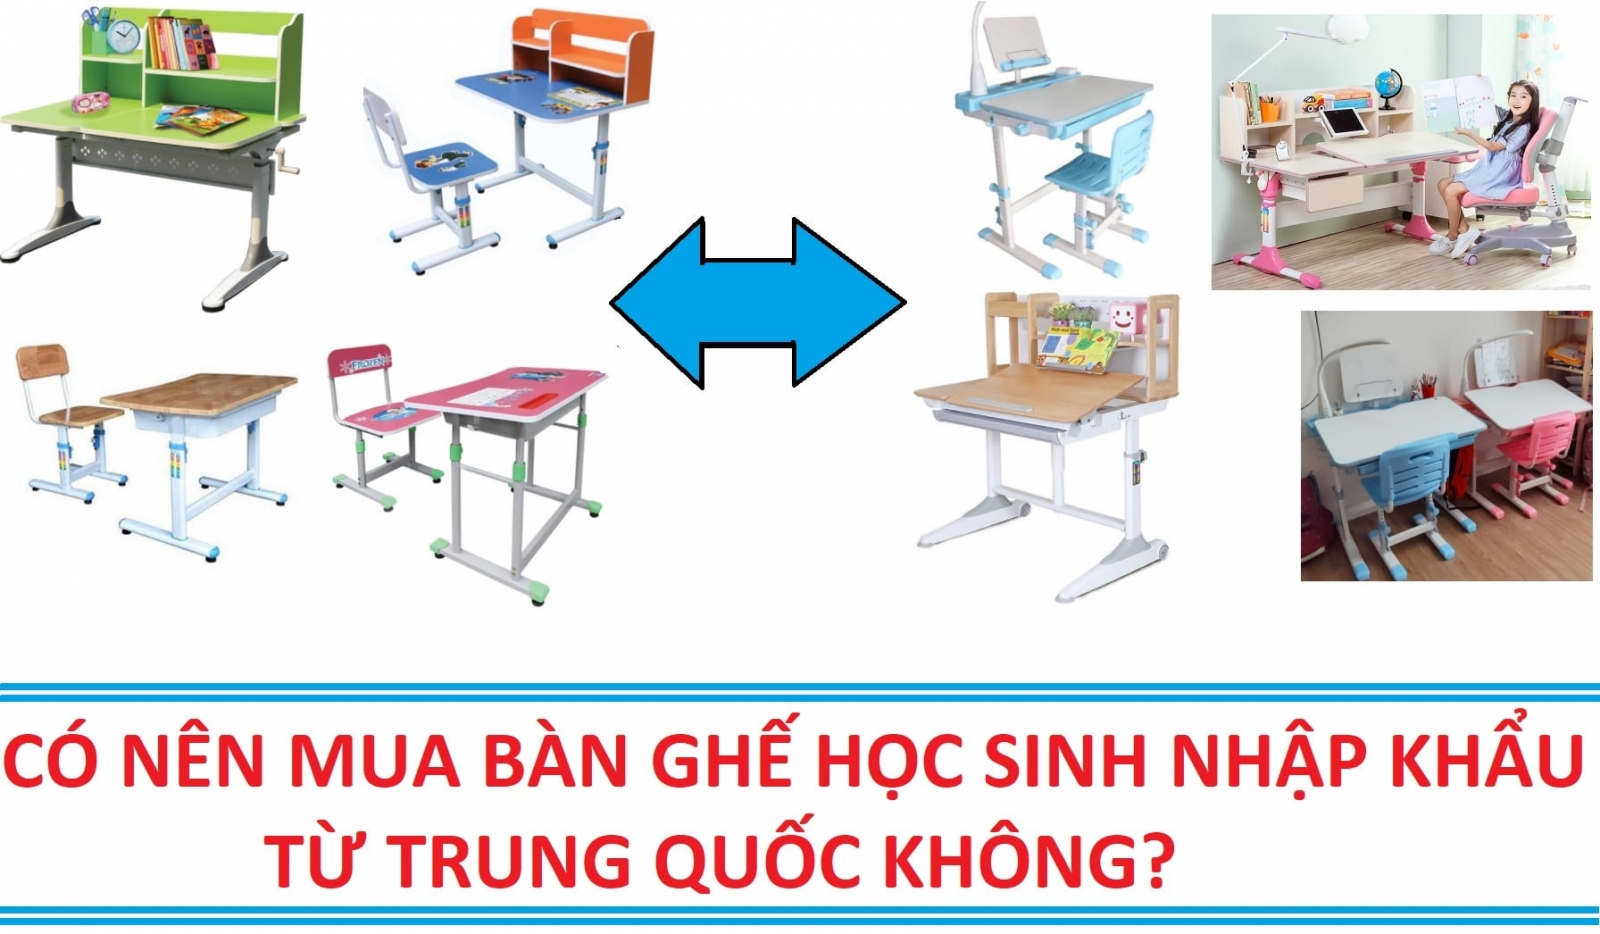 Sở hữu bàn ghế học sinh cao cấp giá rẻ với Đức Khang